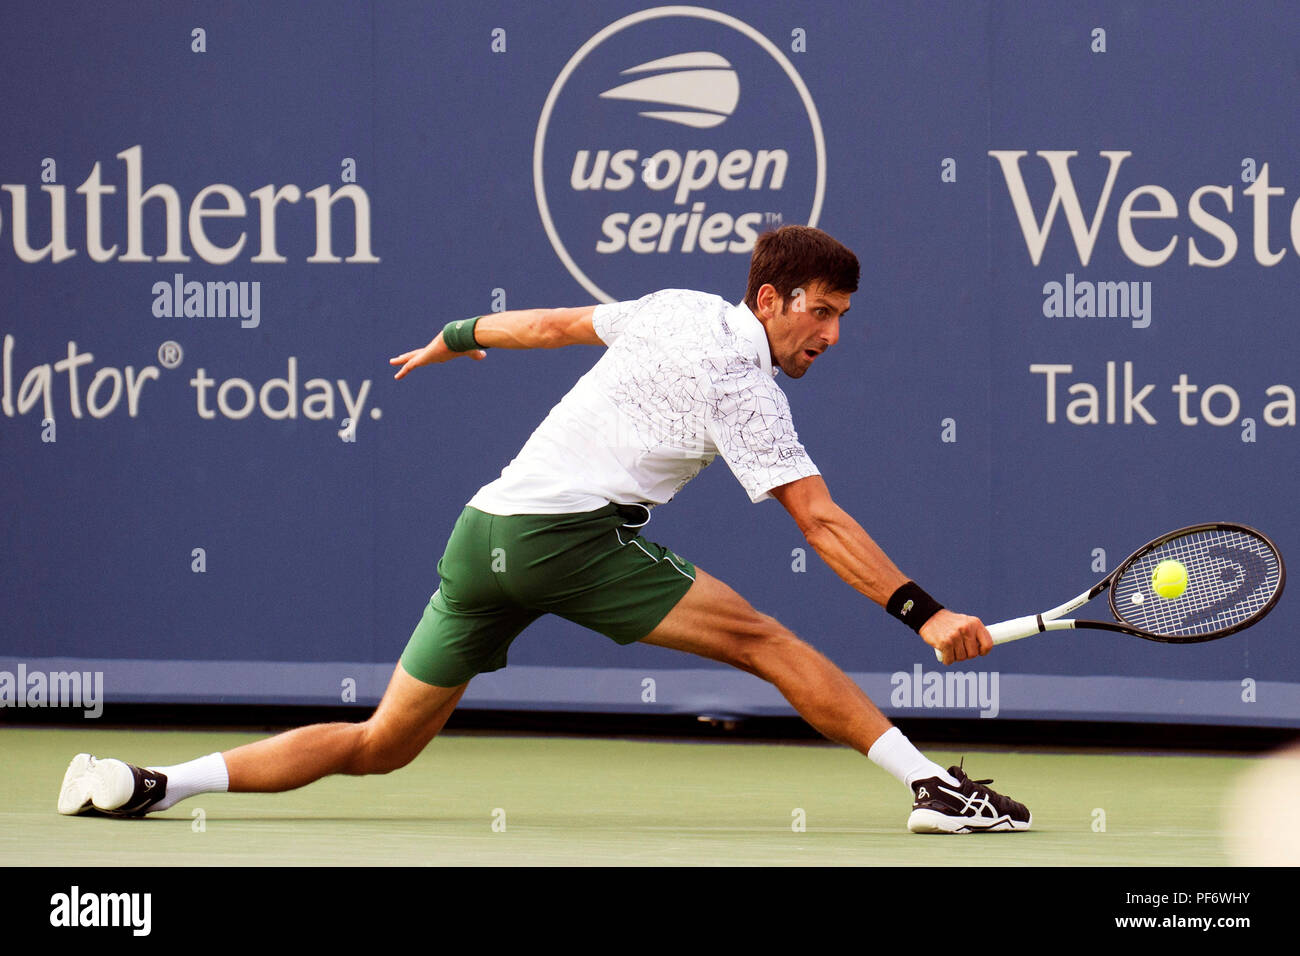 Mason, Ohio, USA. 19 août 2018 : Novak Djokovic (SRB) frappe la balle à Roger Federer (SUI) à la région du sud-ouest de l'ouvrir à Mason, Ohio, USA. Brent Clark/Alamy Live News Banque D'Images